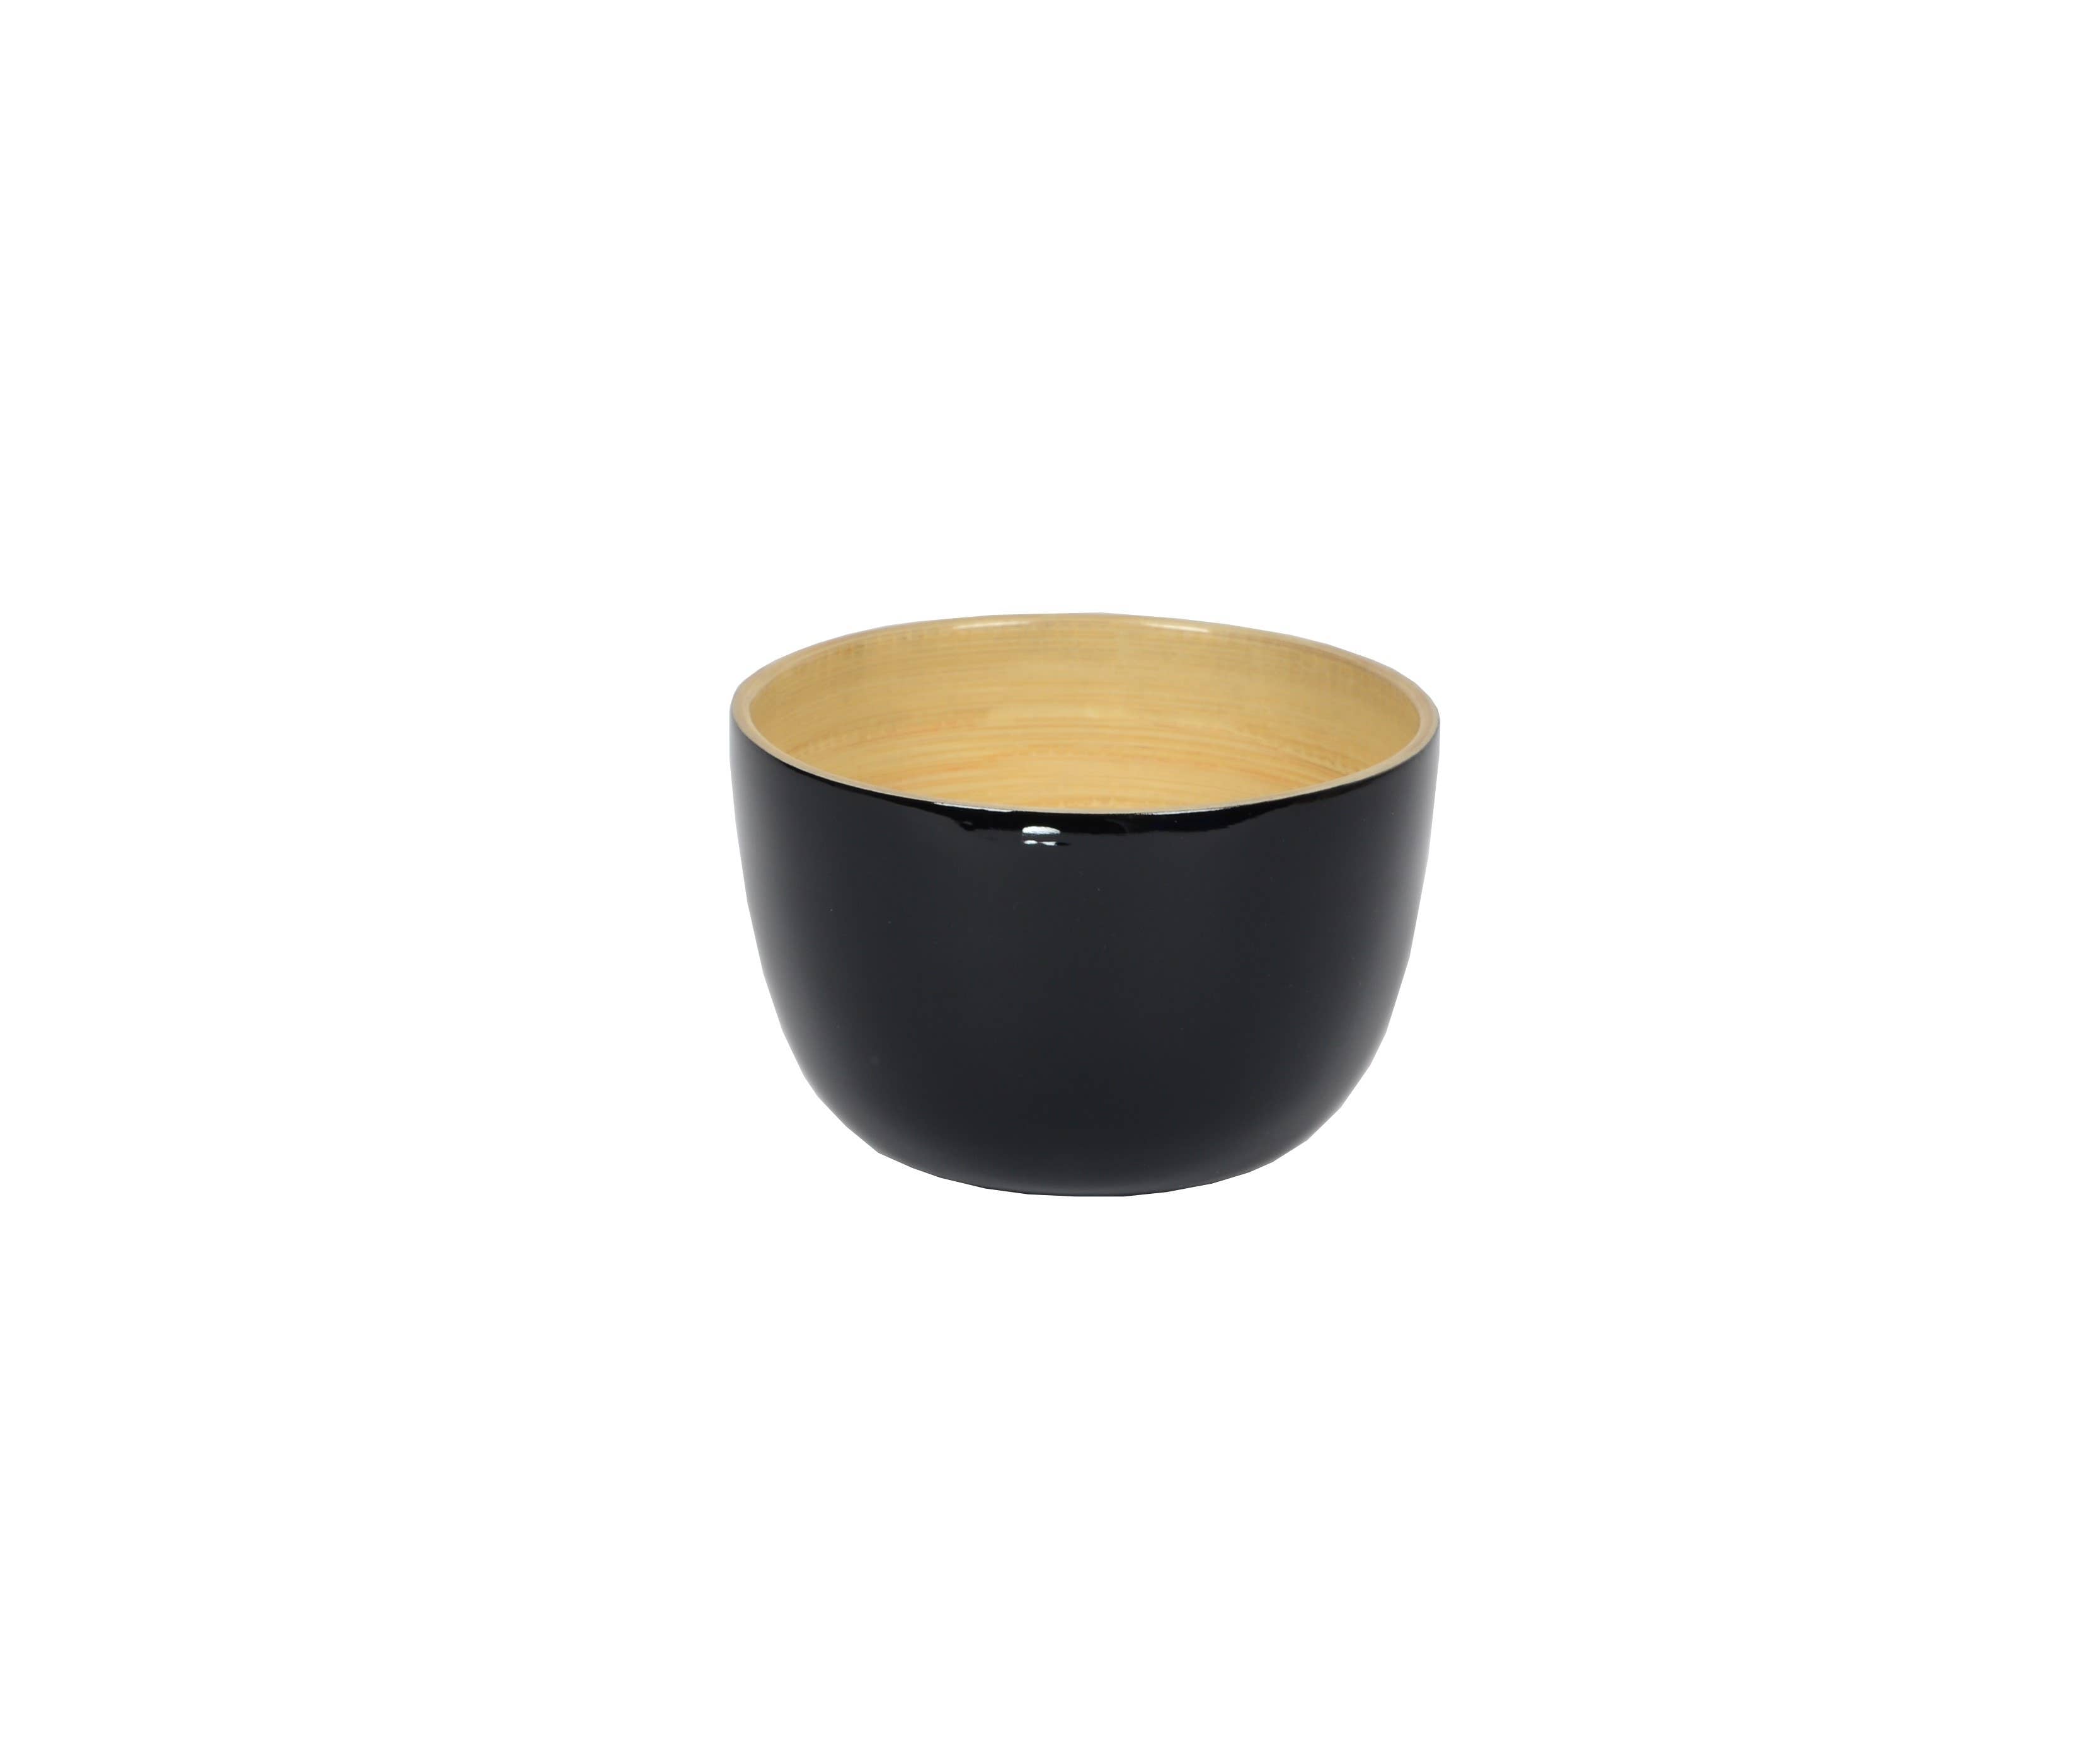 White Bamboo Soup Bowl 4.7" x 3.2"